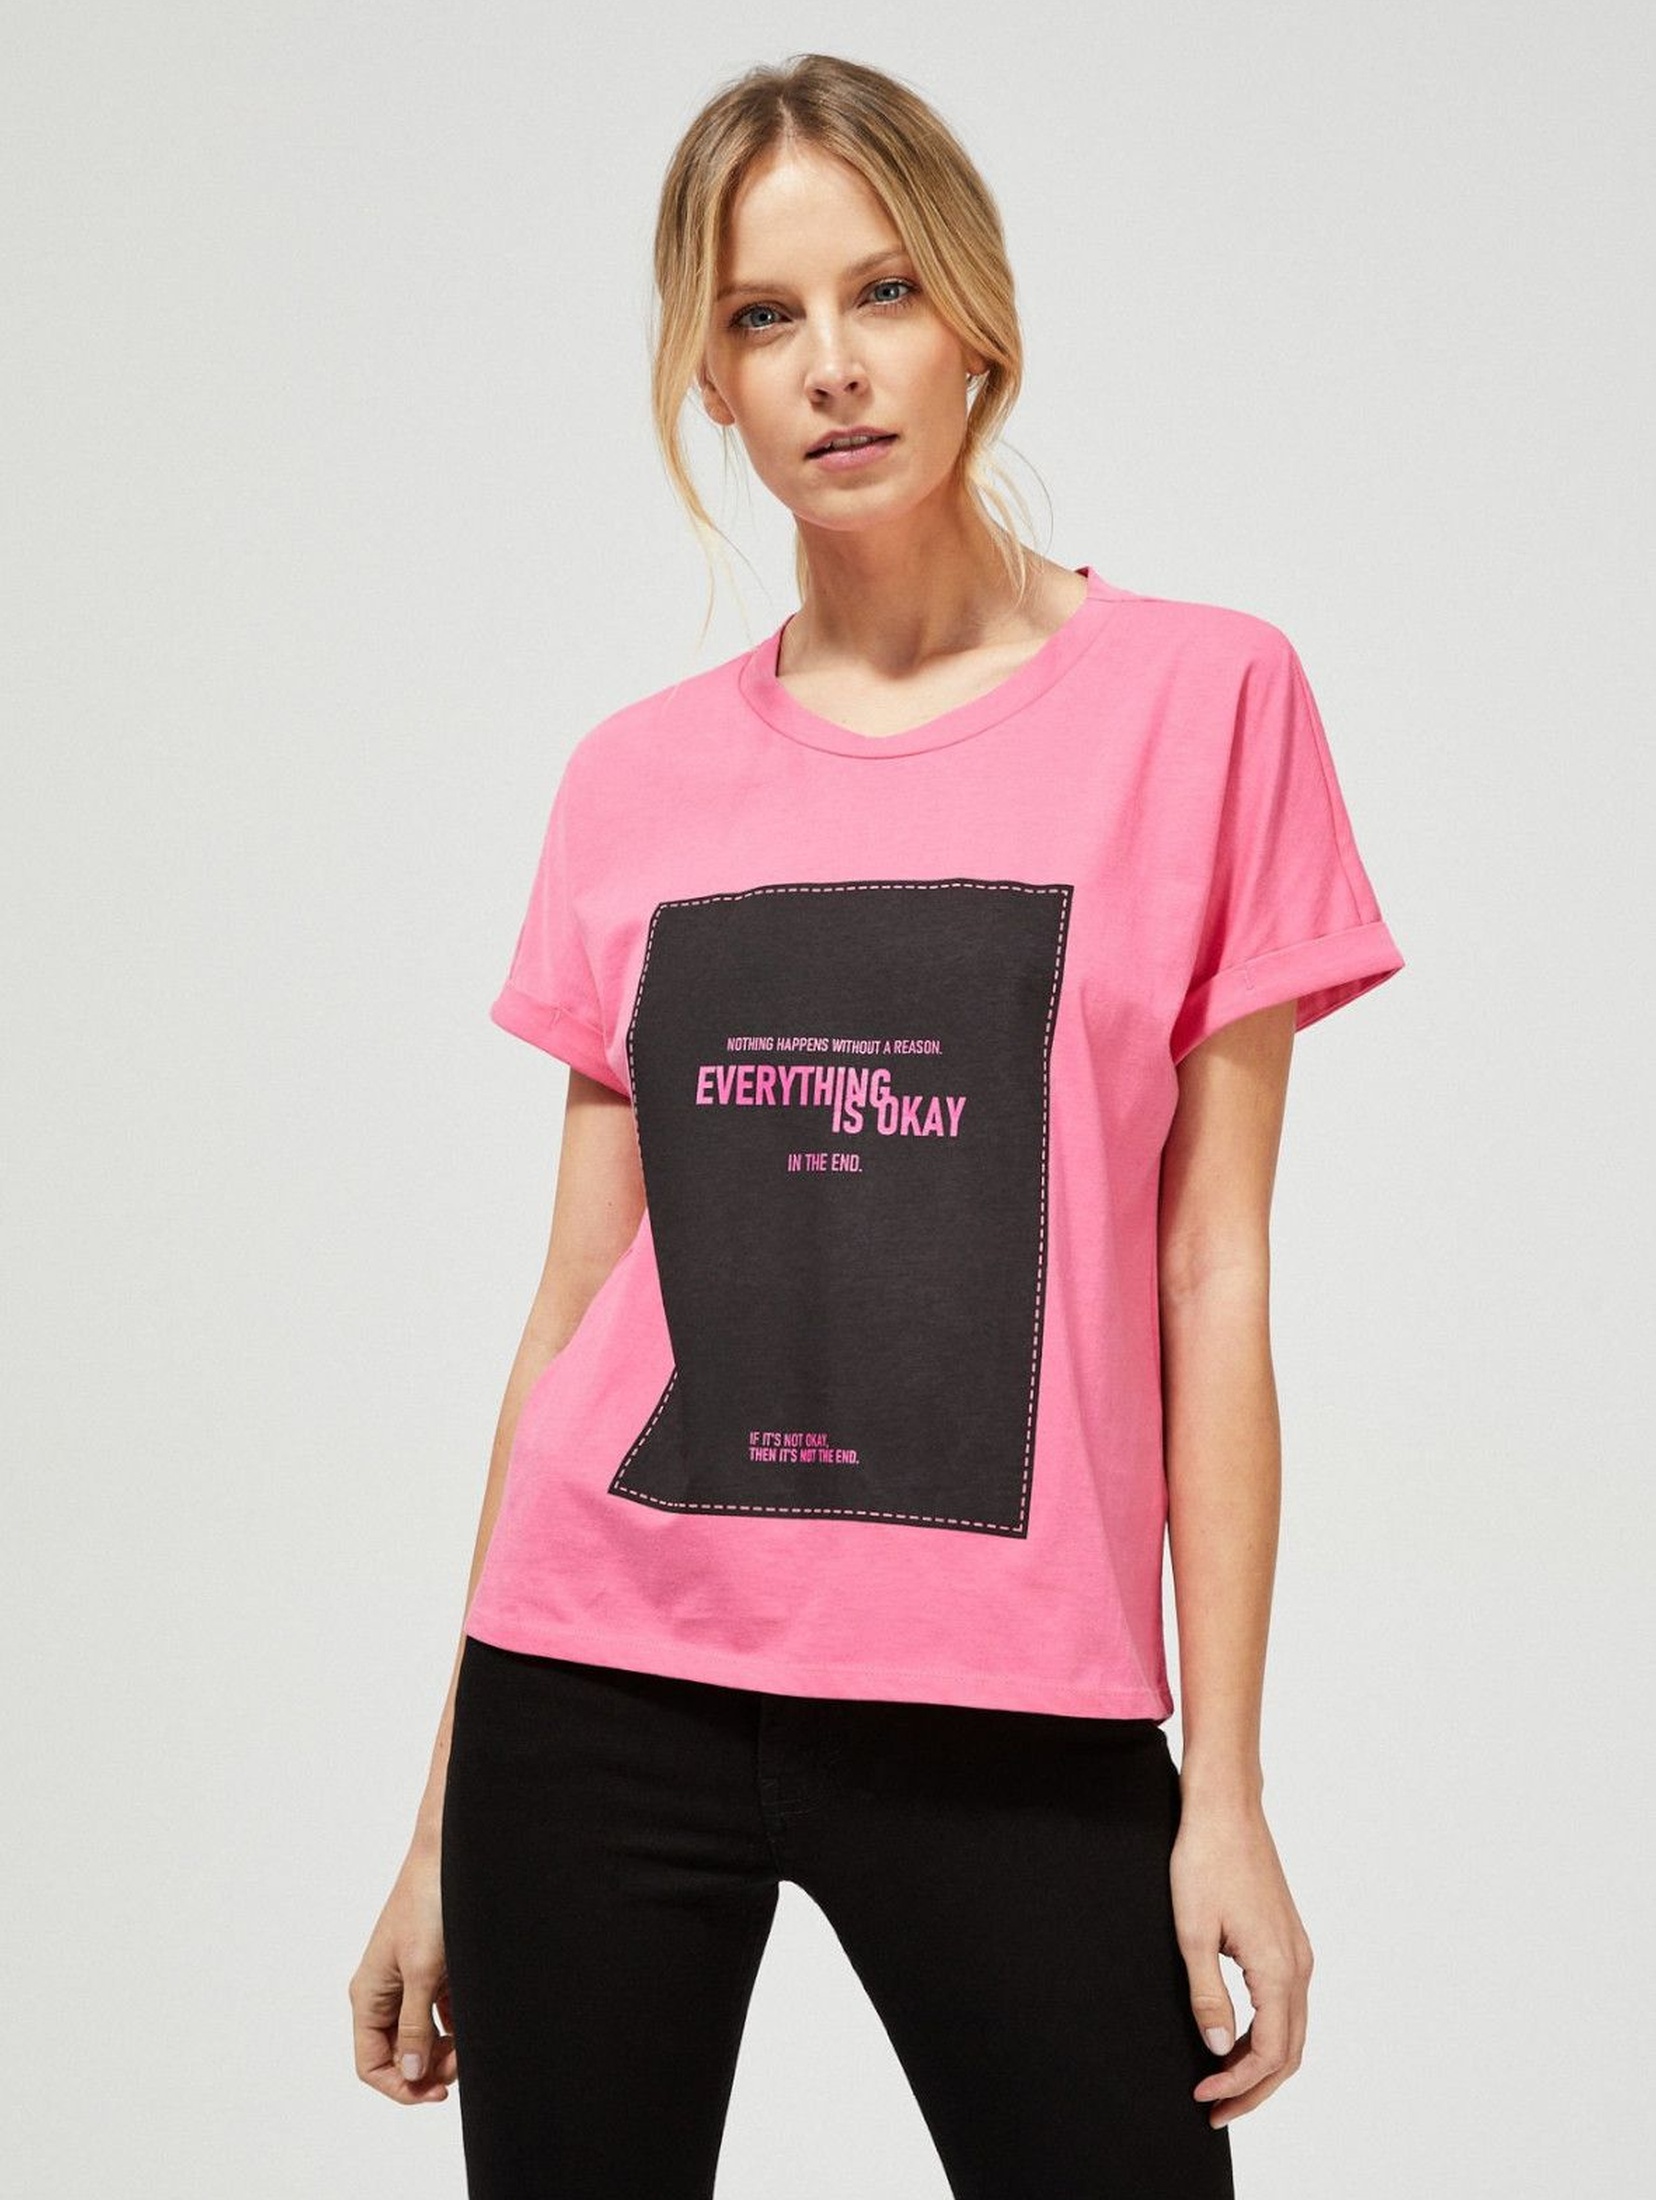 Bawełniany różowy T-shirt damski na krótki rękaw z napisami